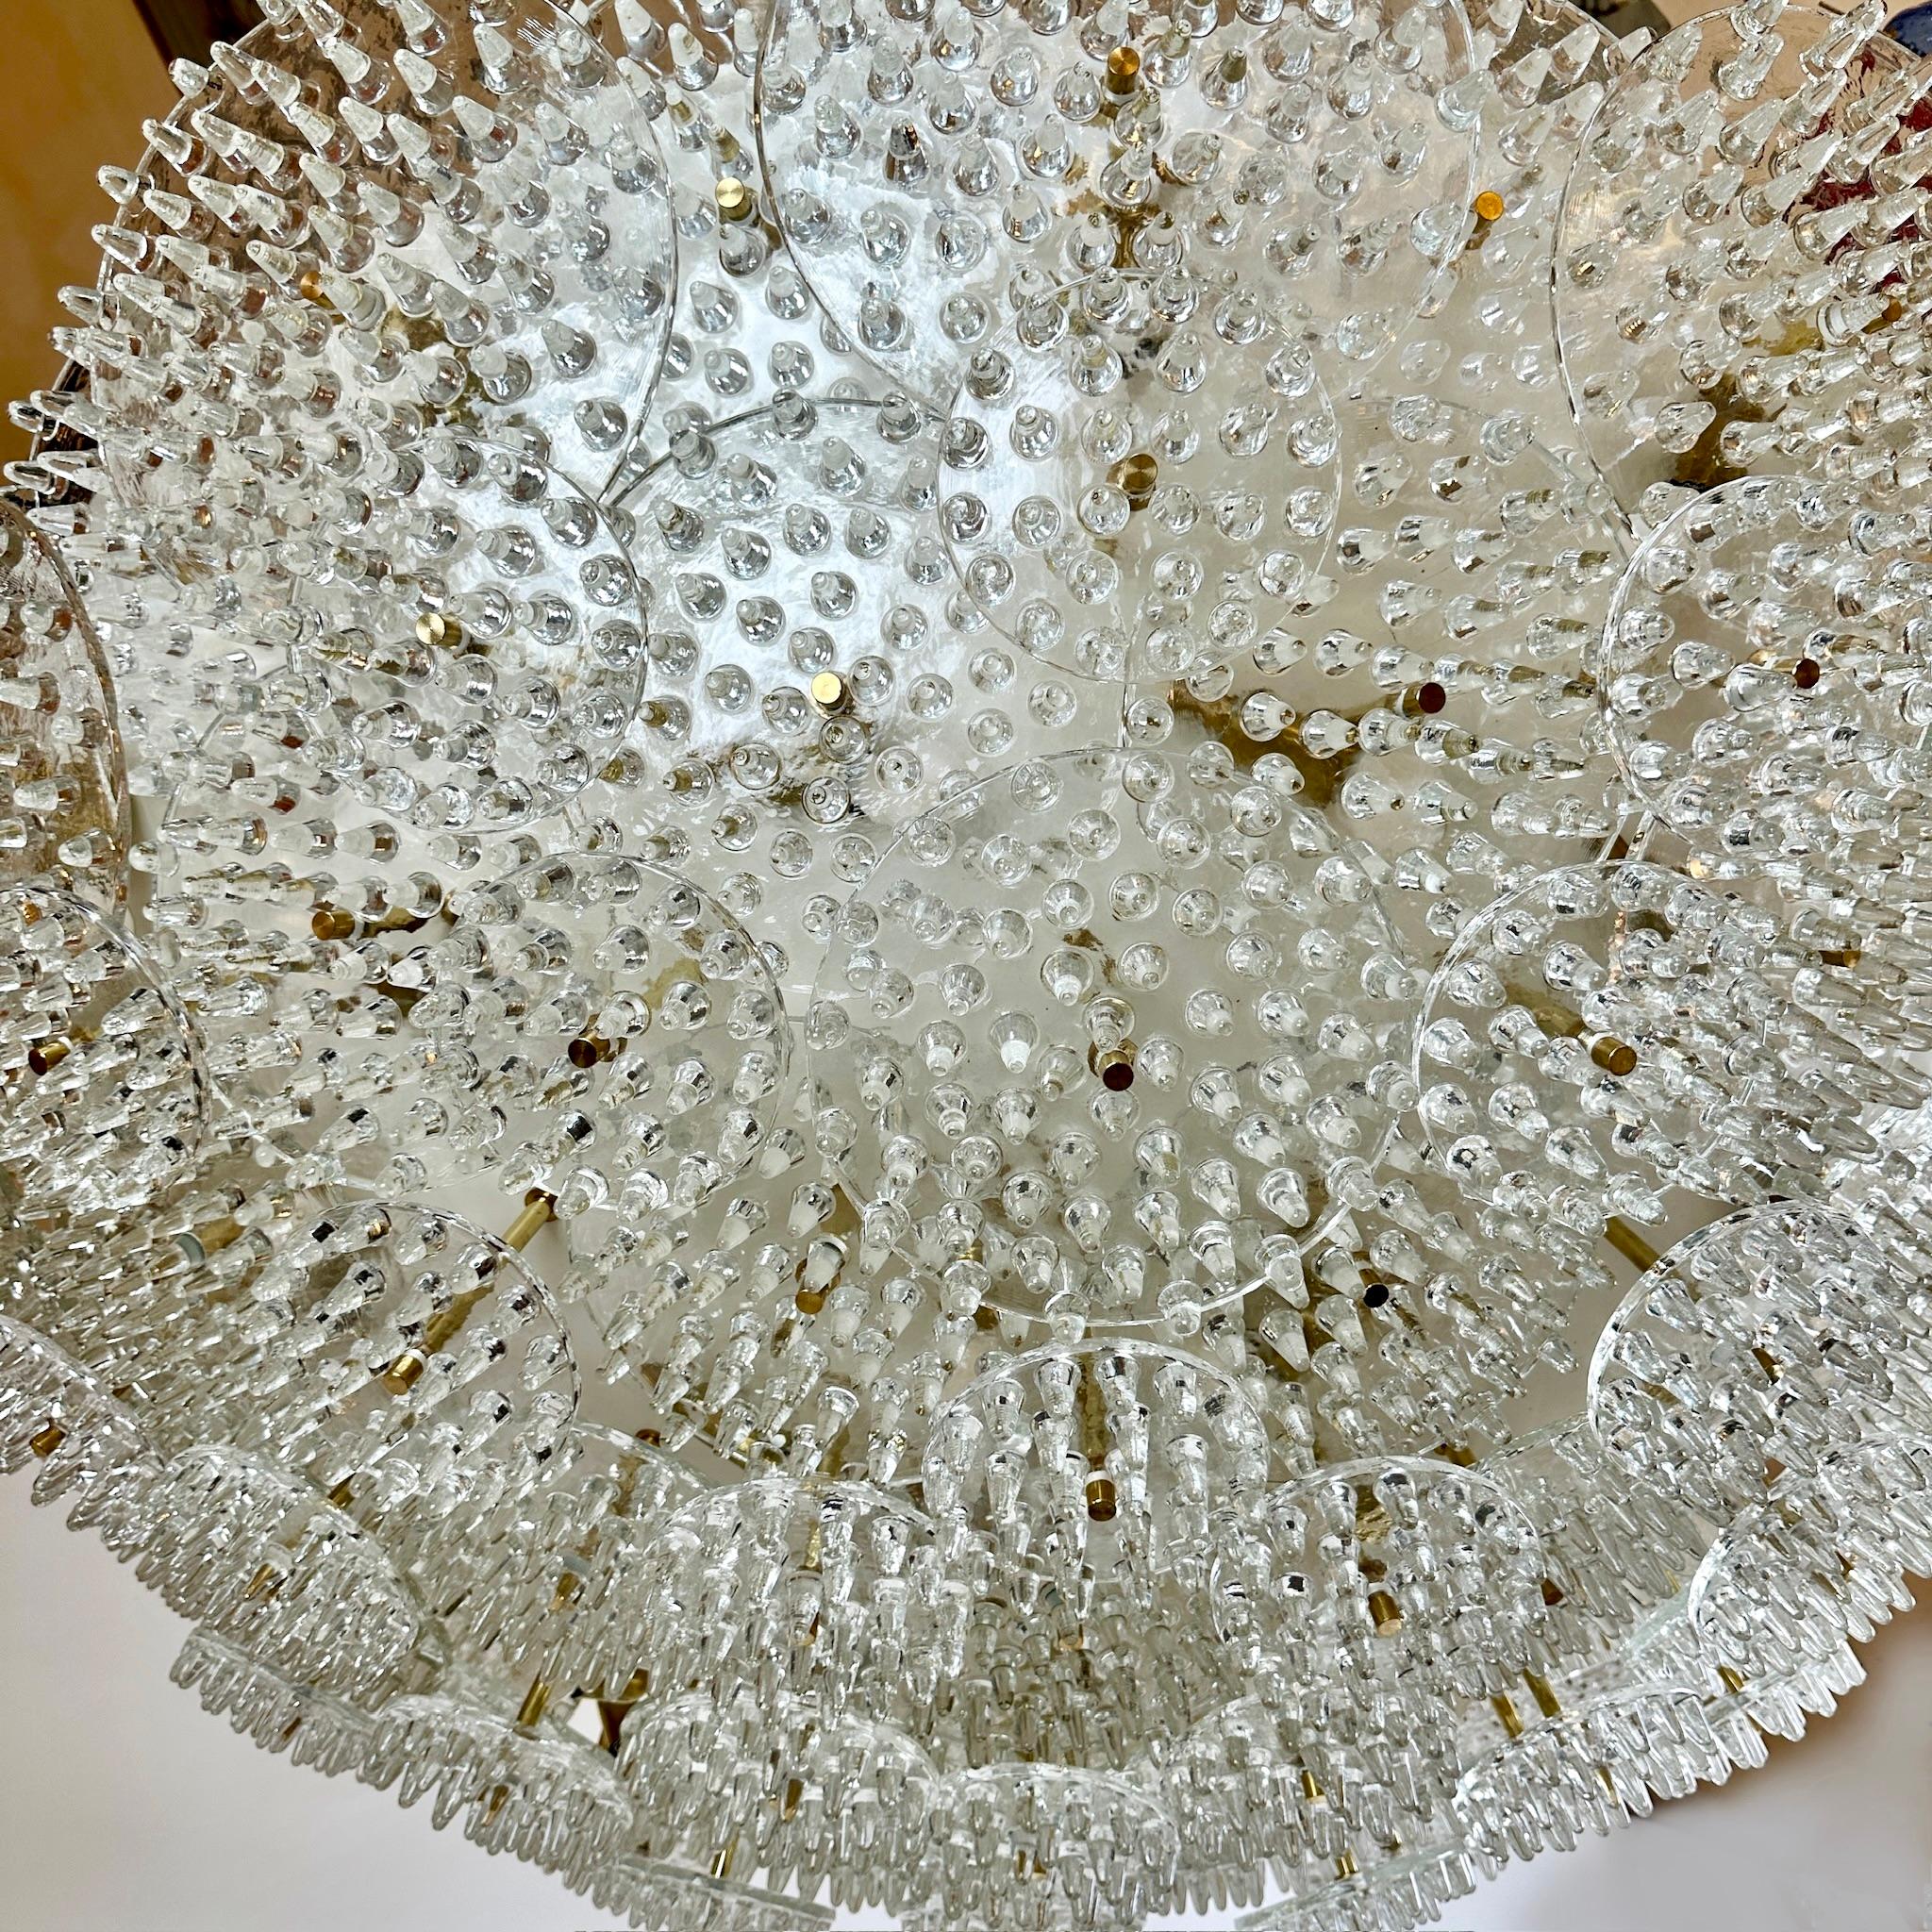 Beeindruckende weiße Metall & Messing mit drei Arten von transparenten Murano-Glasscheiben voll von Fialen (Größe: 15, 25 & 30 Diam. cm.) flush mount / Kronleuchter.
Empfohlen 31 E14 Warm Glühbirnen.
Ungefähres Gewicht: 180 kg. 